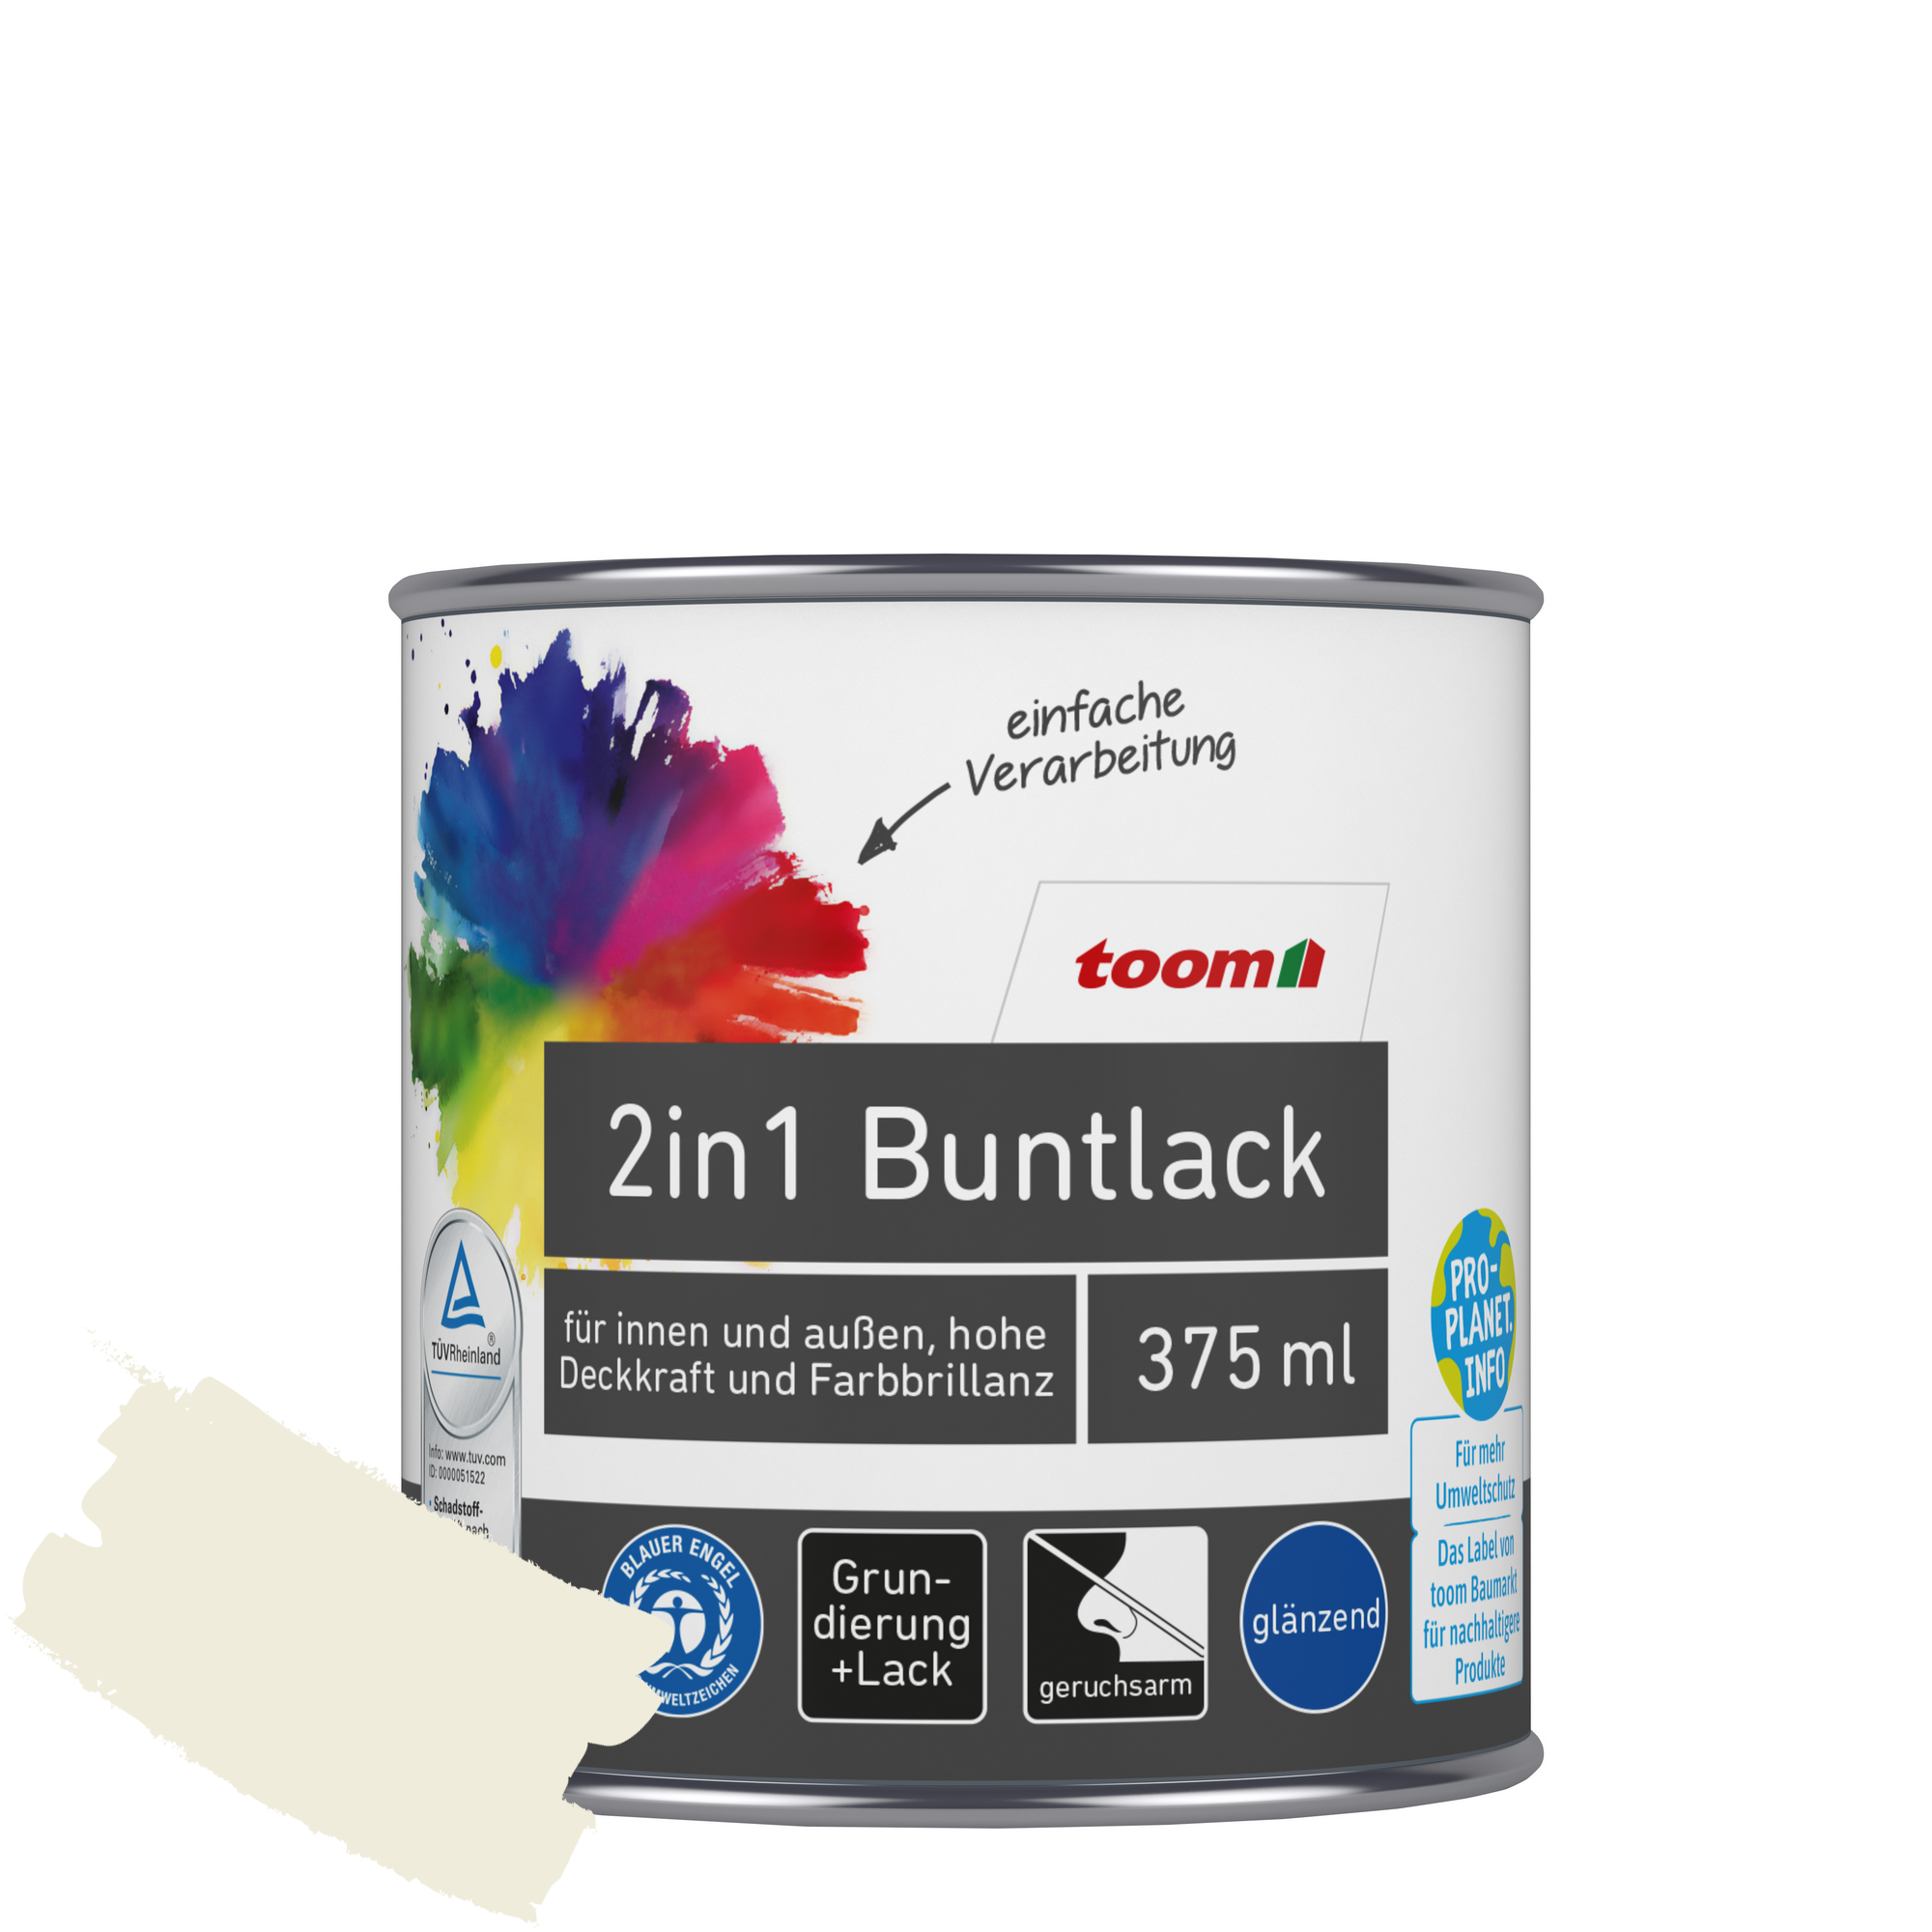 2in1 Buntlack 'Eisblume' weiß glänzend 375 ml + product picture